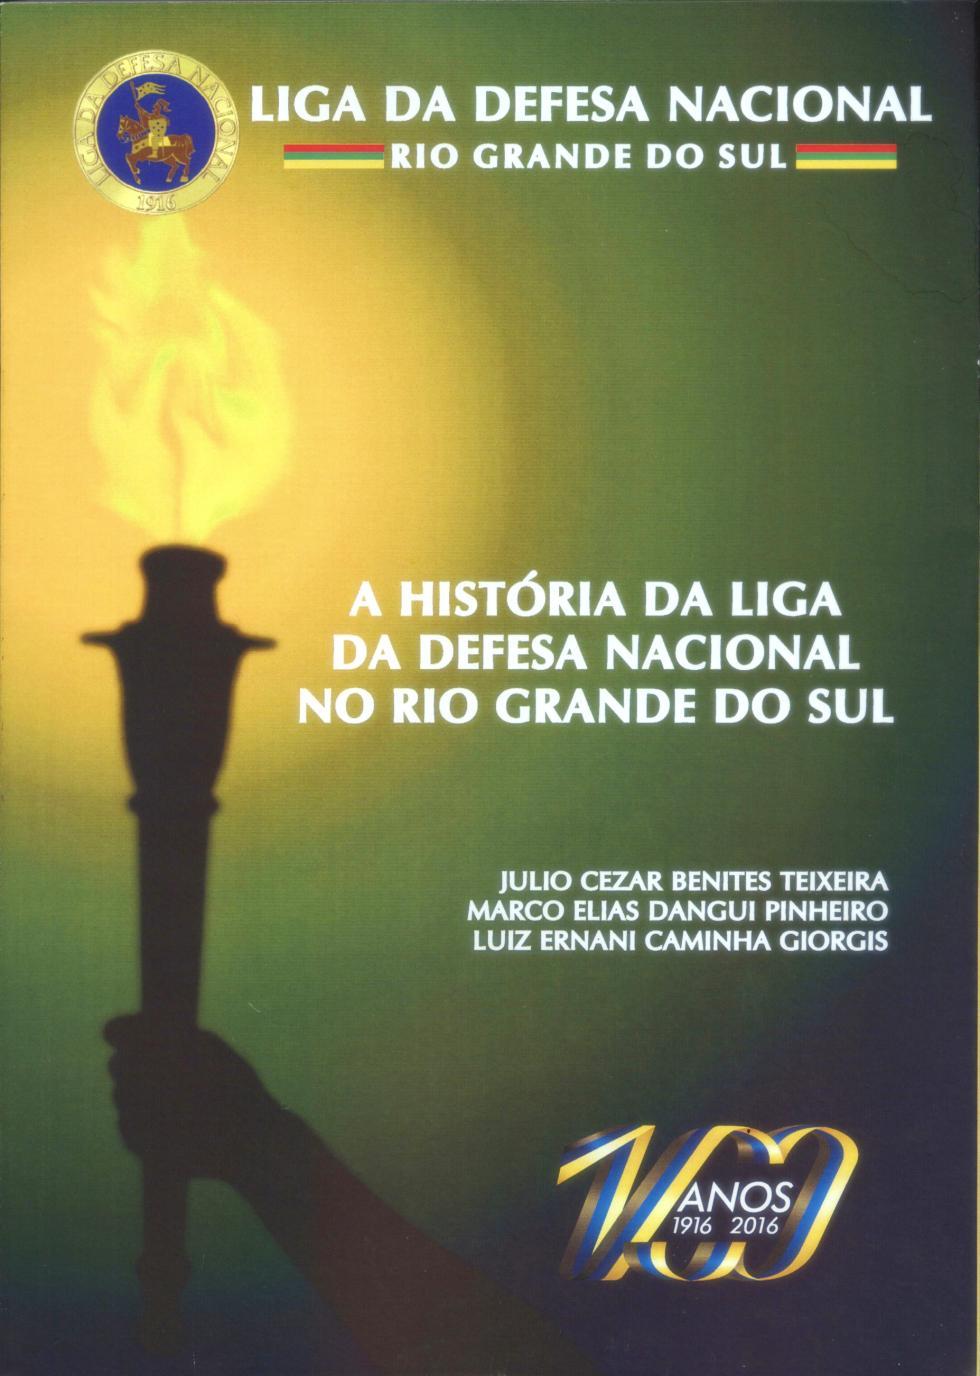 10 Centenário da LDN/RS e lançamento do livro na Câmara de Vereadores Em 16 de novembro foi realizado o evento comemorativo dos 100 anos da Liga de Defesa Nacional do Rio Grande do Sul e o lançamento